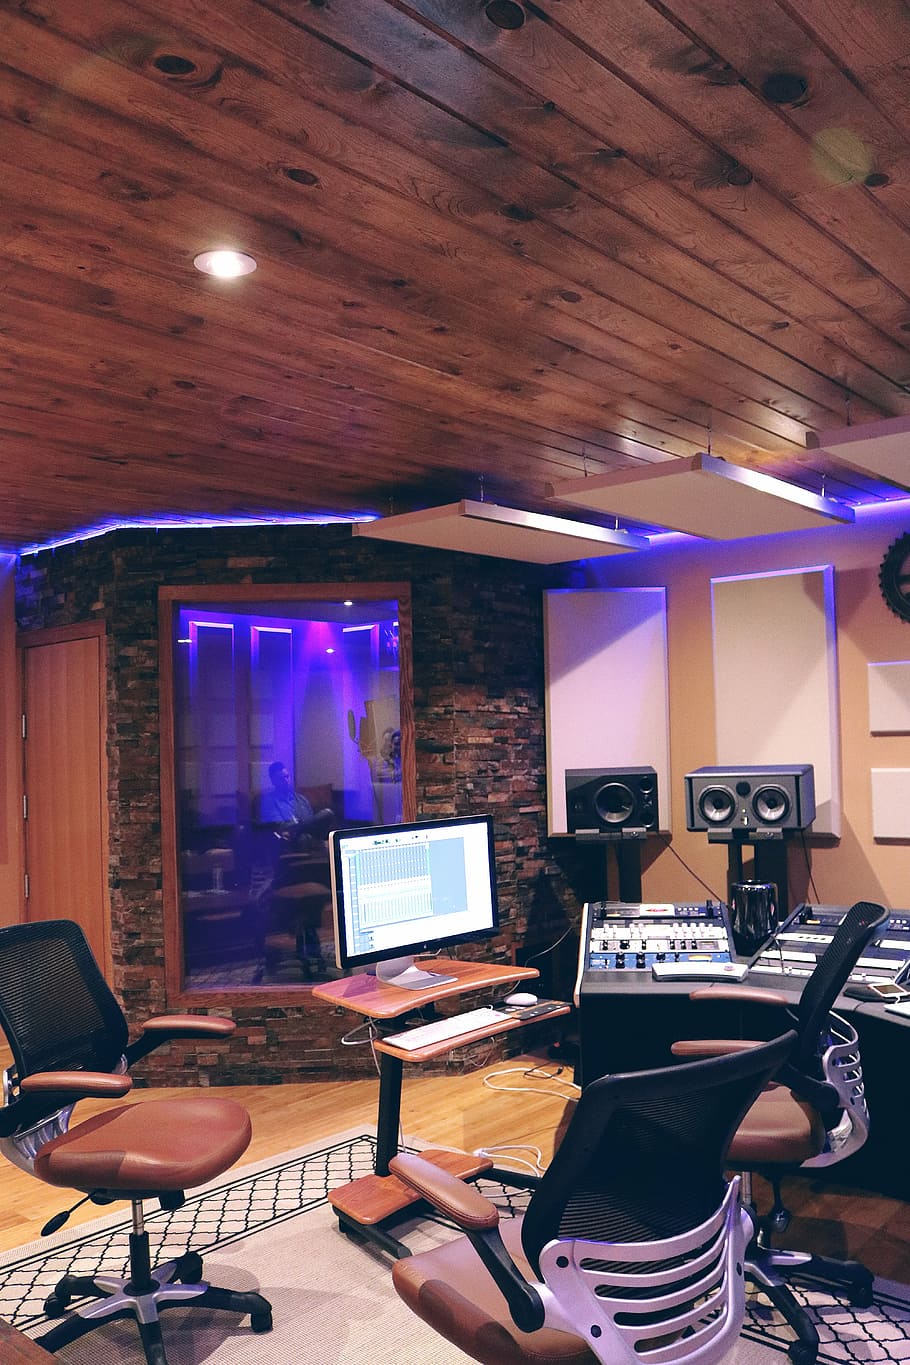 HD wallpaper: recording studio with purple cove light, music, music studio  | Wallpaper Flare